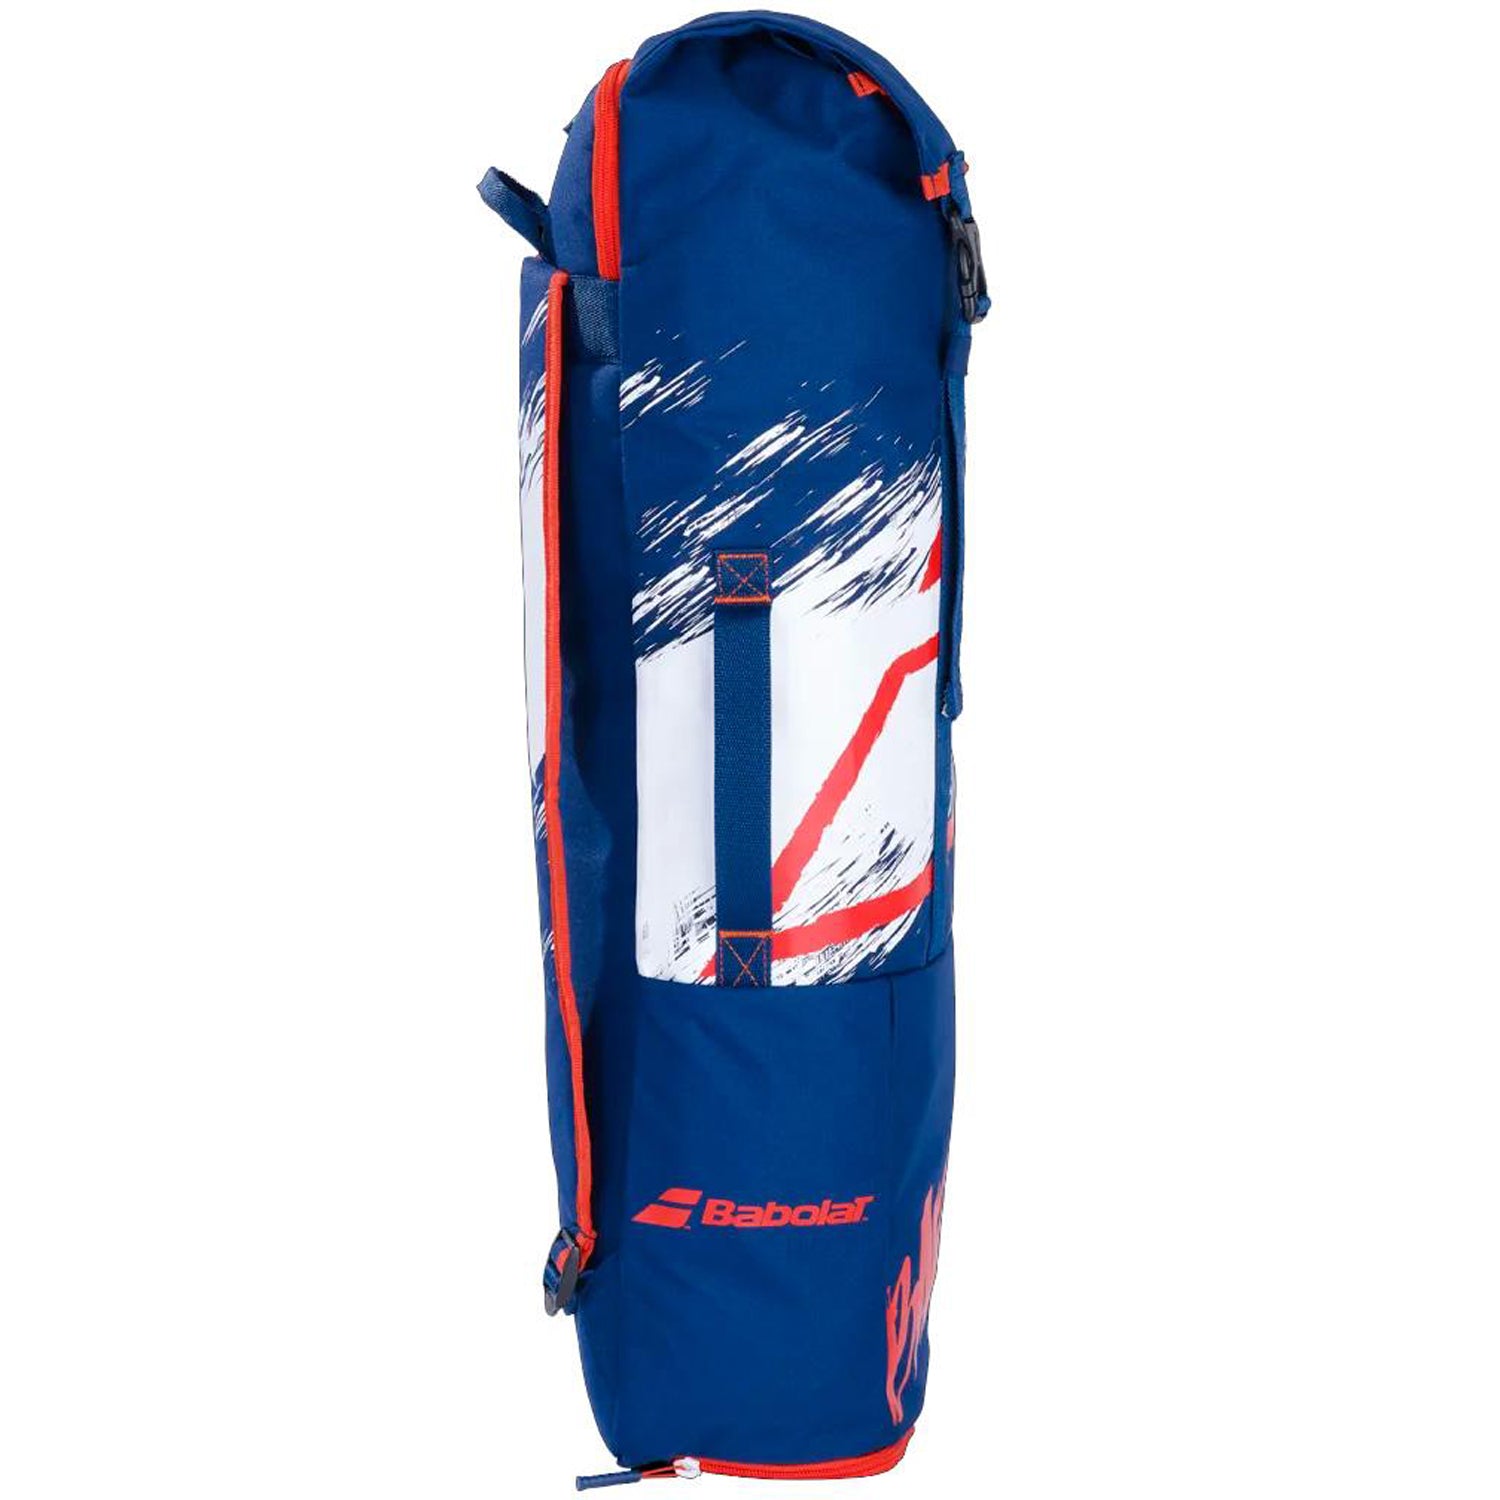 Babolat Backrack 2 Badminton Bag, Blue/White/Red - Best Price online Prokicksports.com